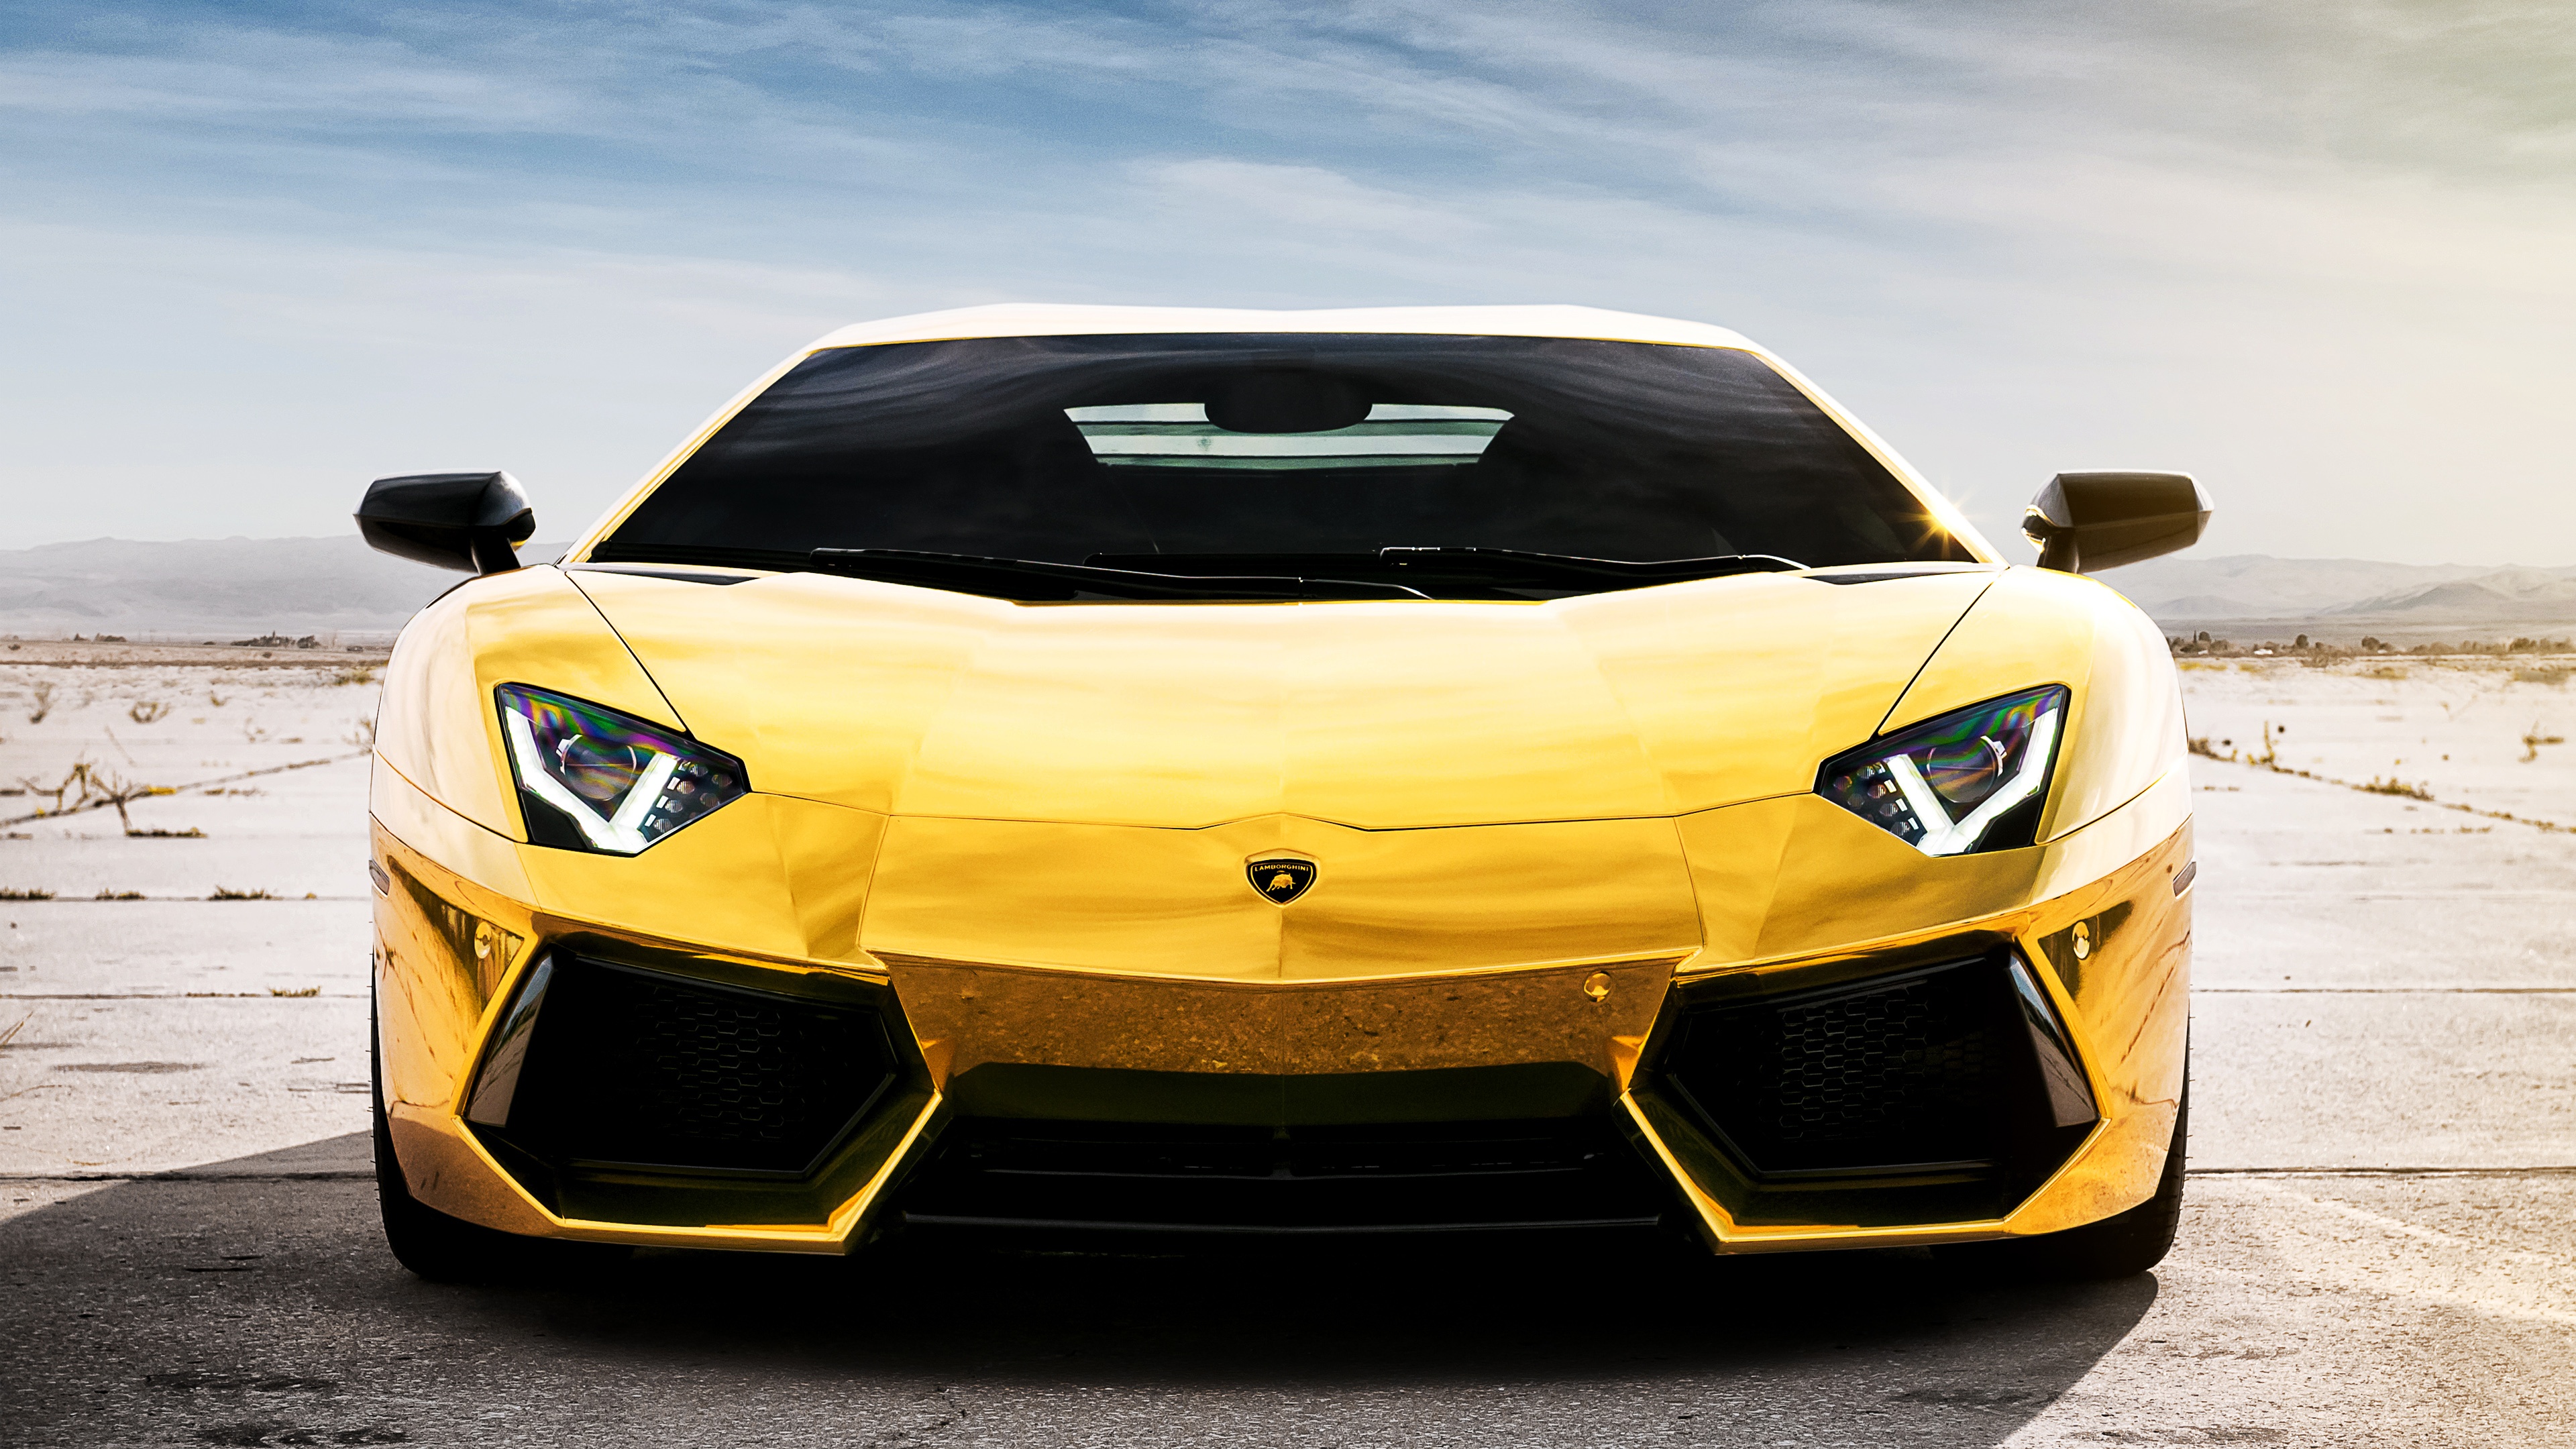 Lamborghini Aventador Wallpapers Free Download ...